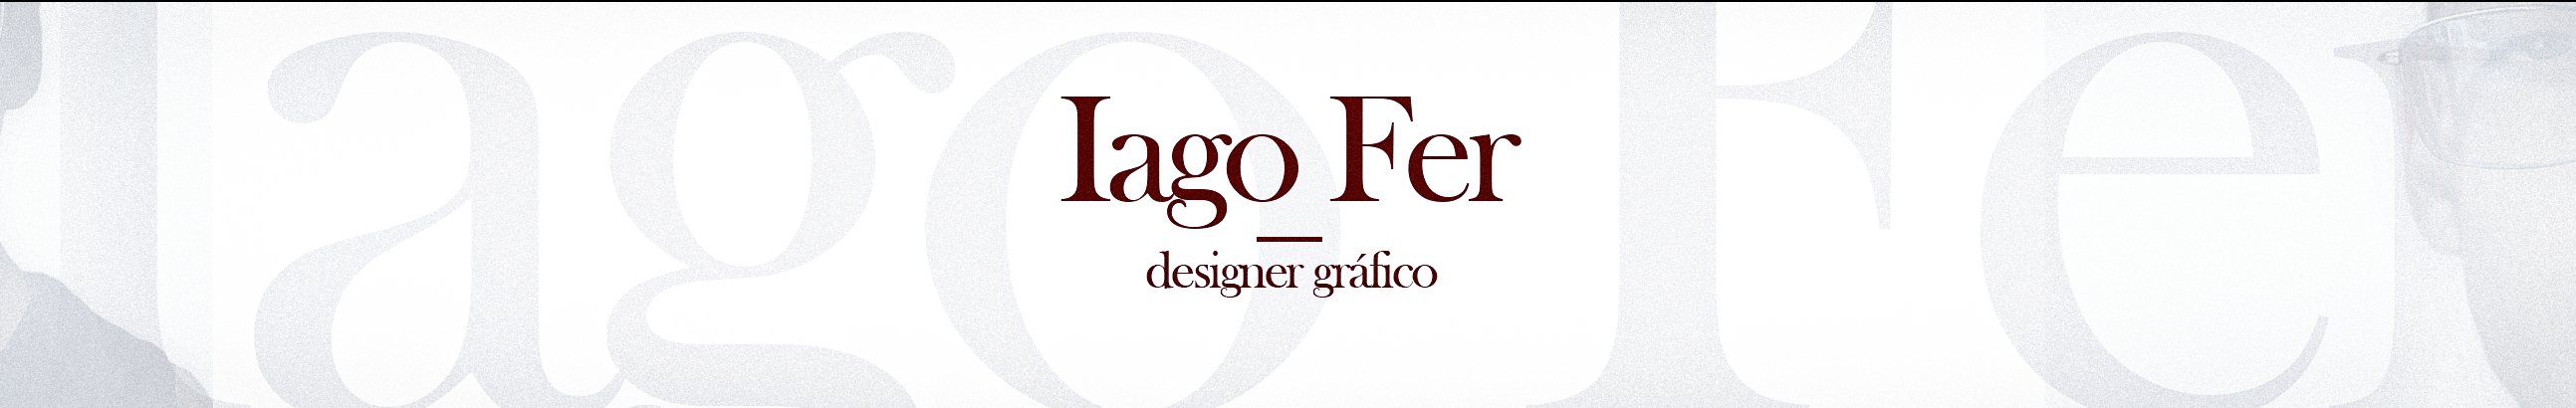 Iago Fer のプロファイルバナー